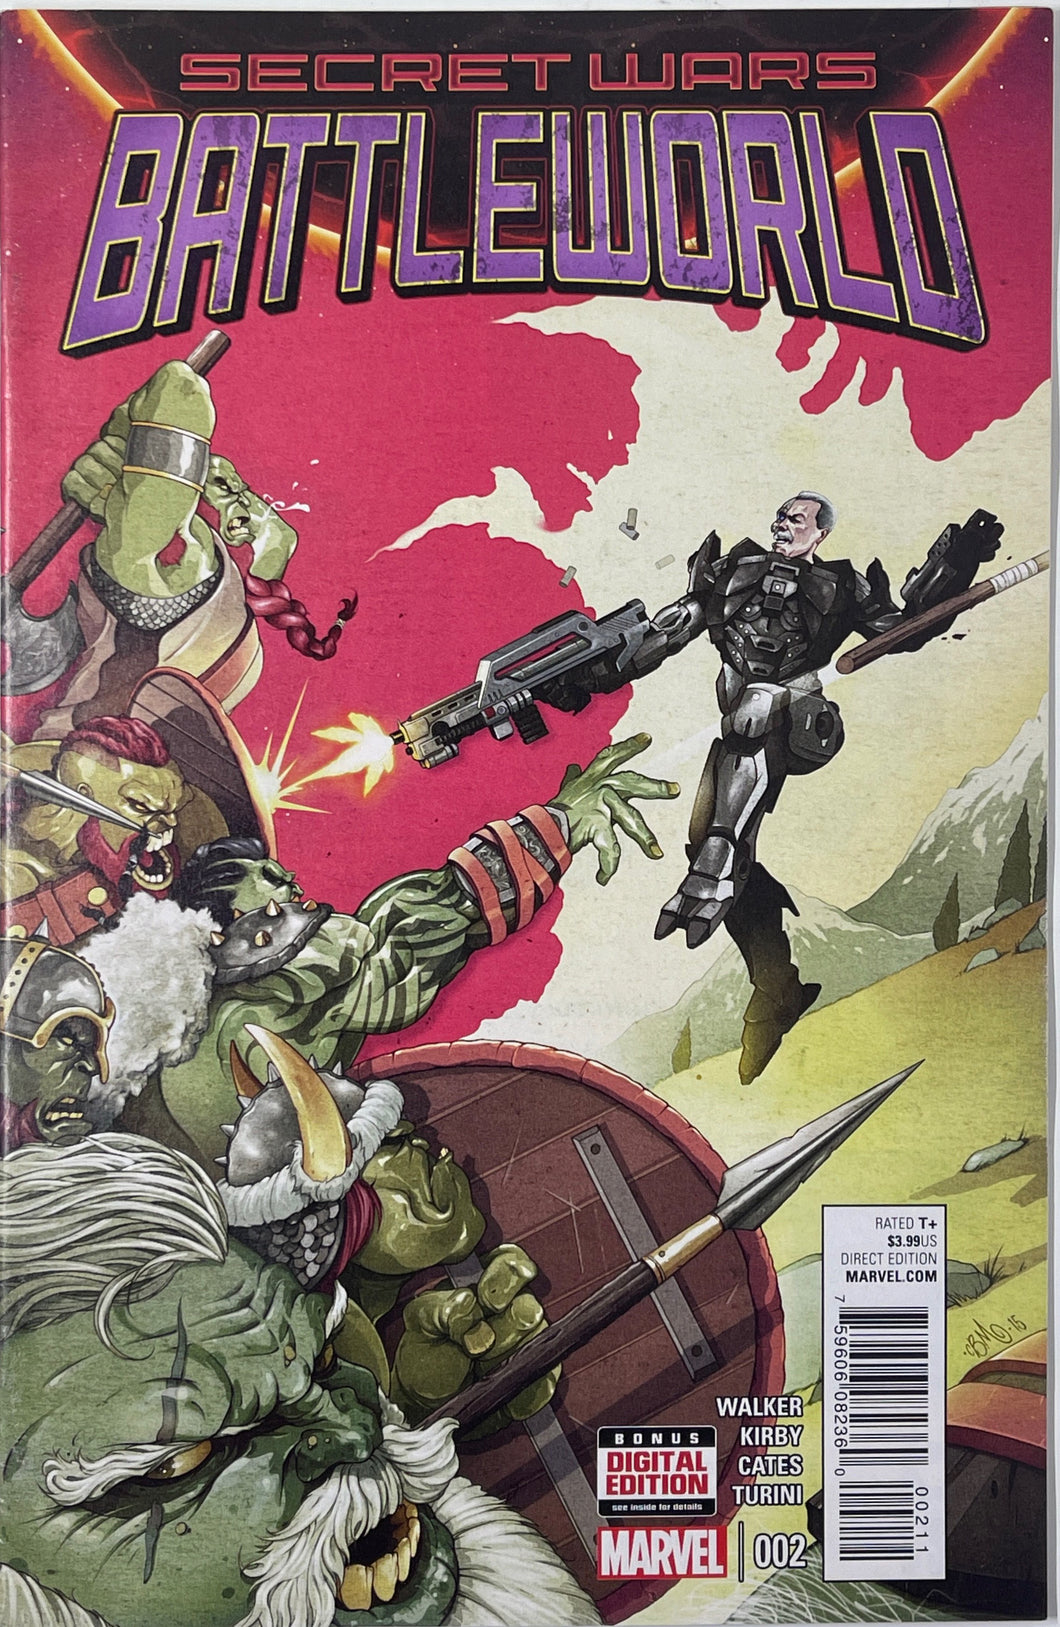 Secret Wars: Battleworld 2 (1st Published Work at Marvel by Donny Cates In Backup Story)